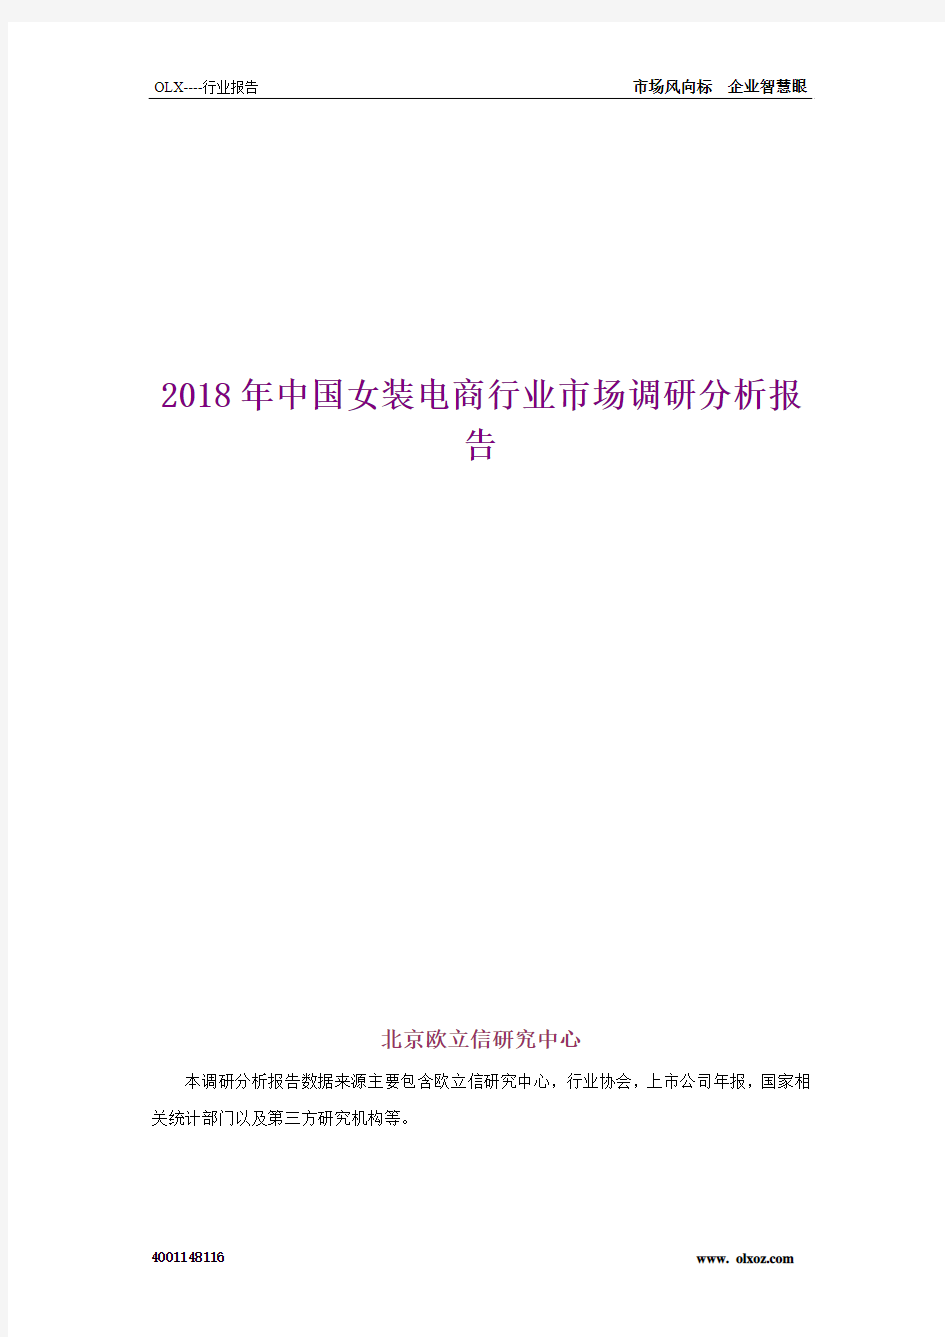 2018年中国女装电商行业市场调研分析报告